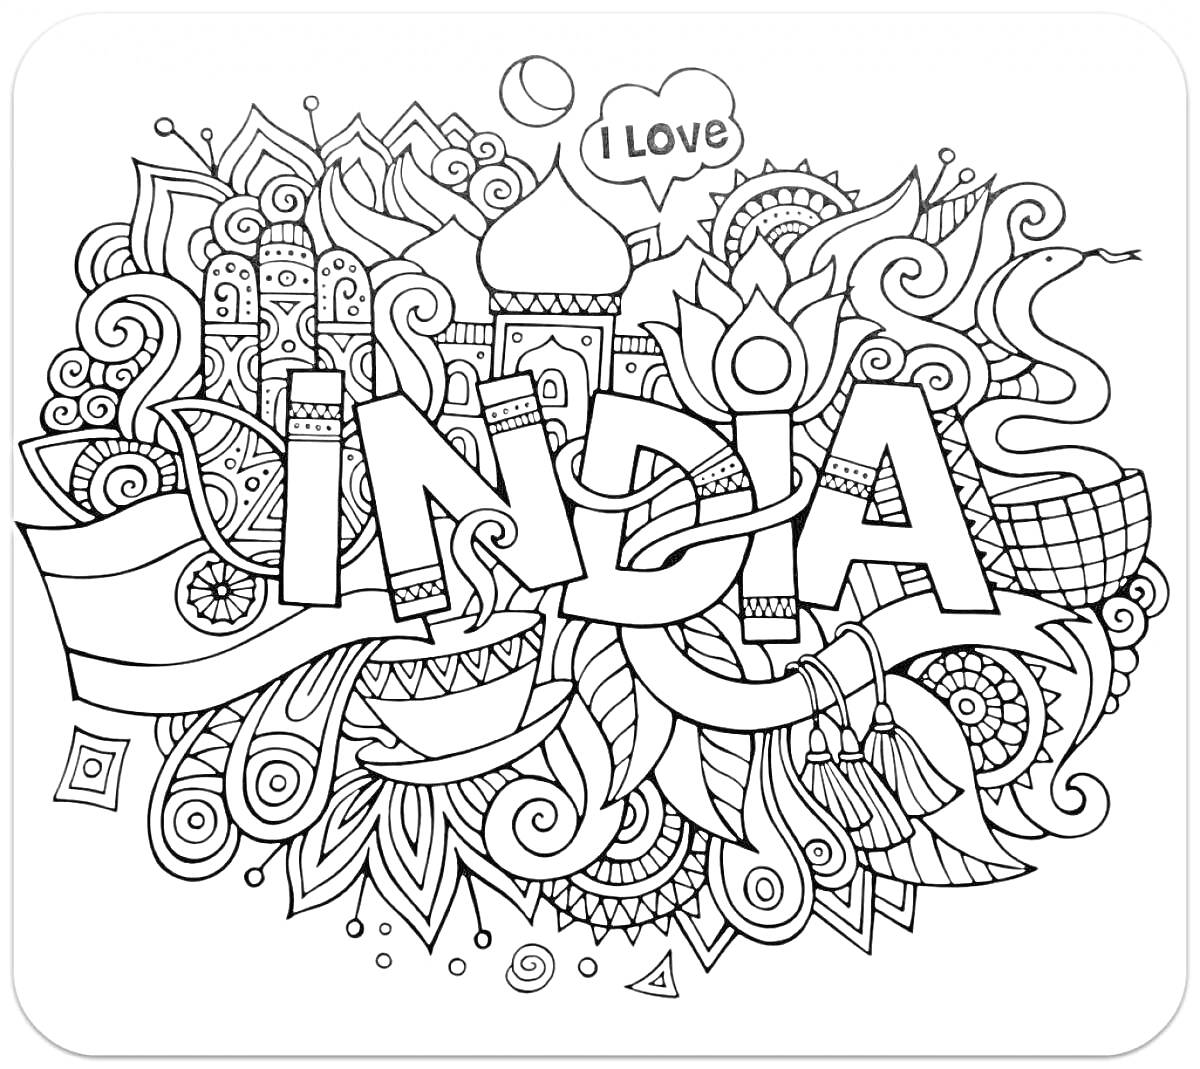 Раскраска I LOVE INDIA с абстрактными узорами, надписями, растительными мотивами и архитектурными элементами